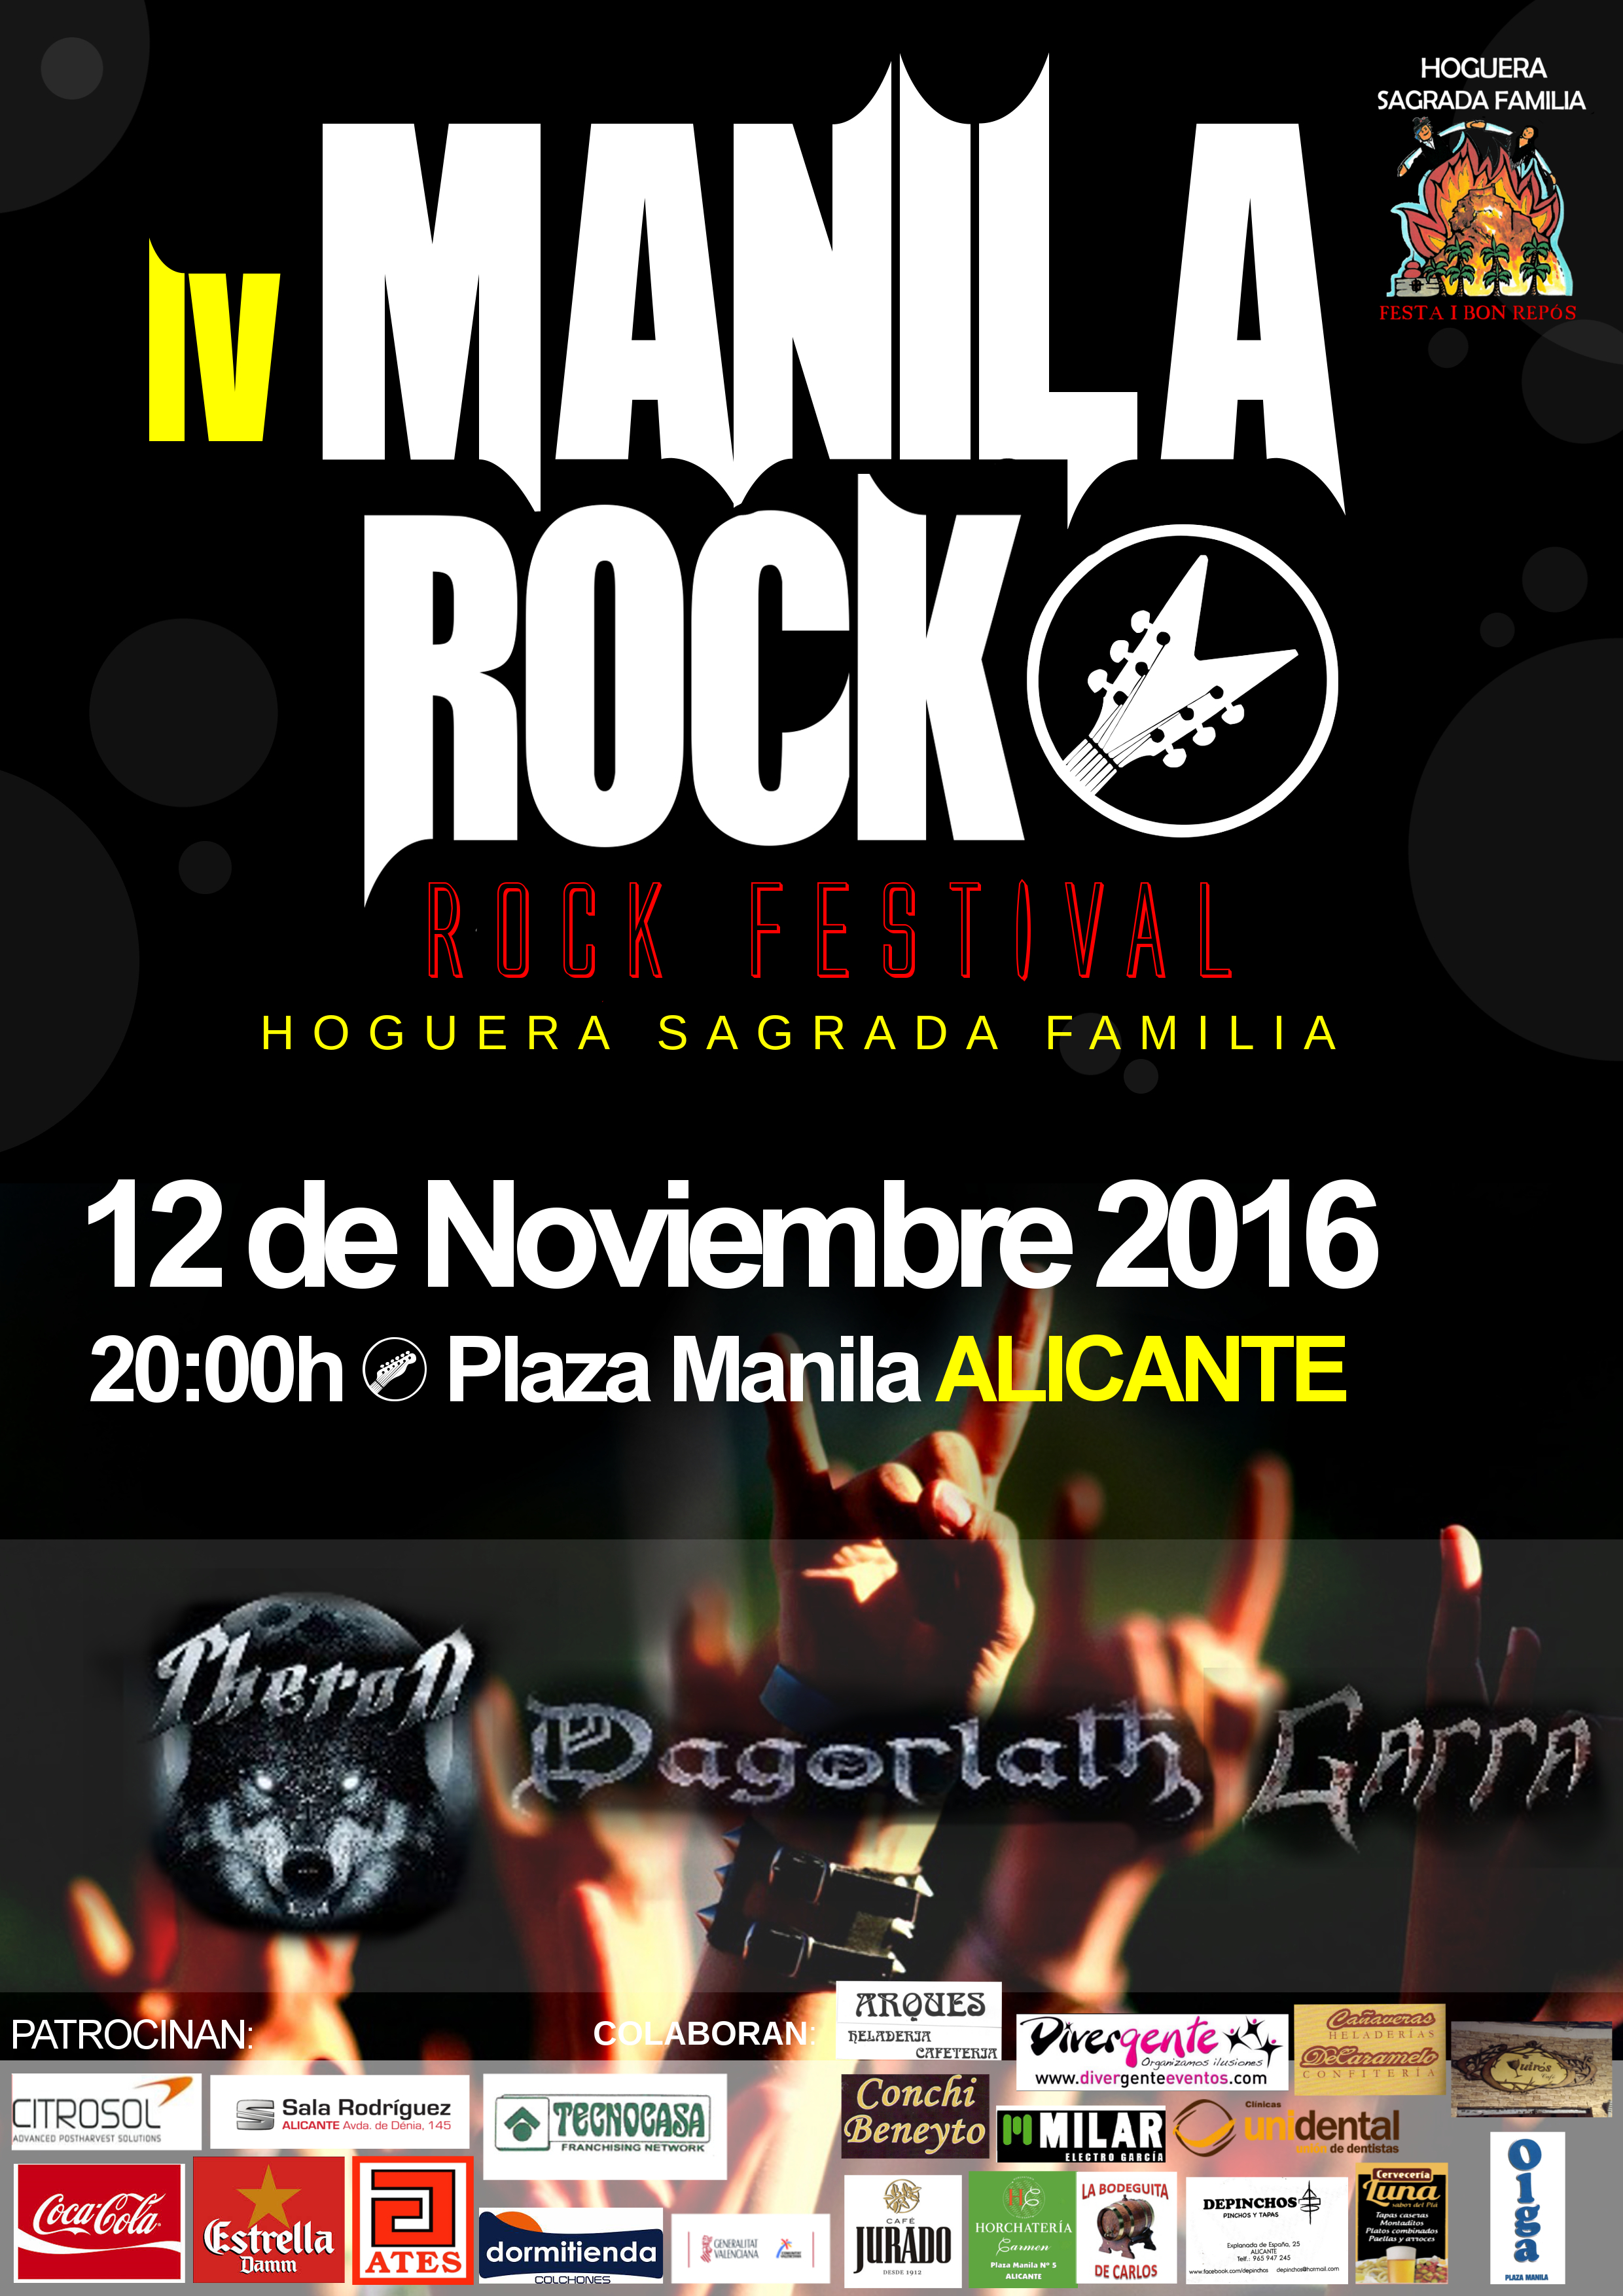 Unidental Alicante patrocinador de Manila Rock 2016